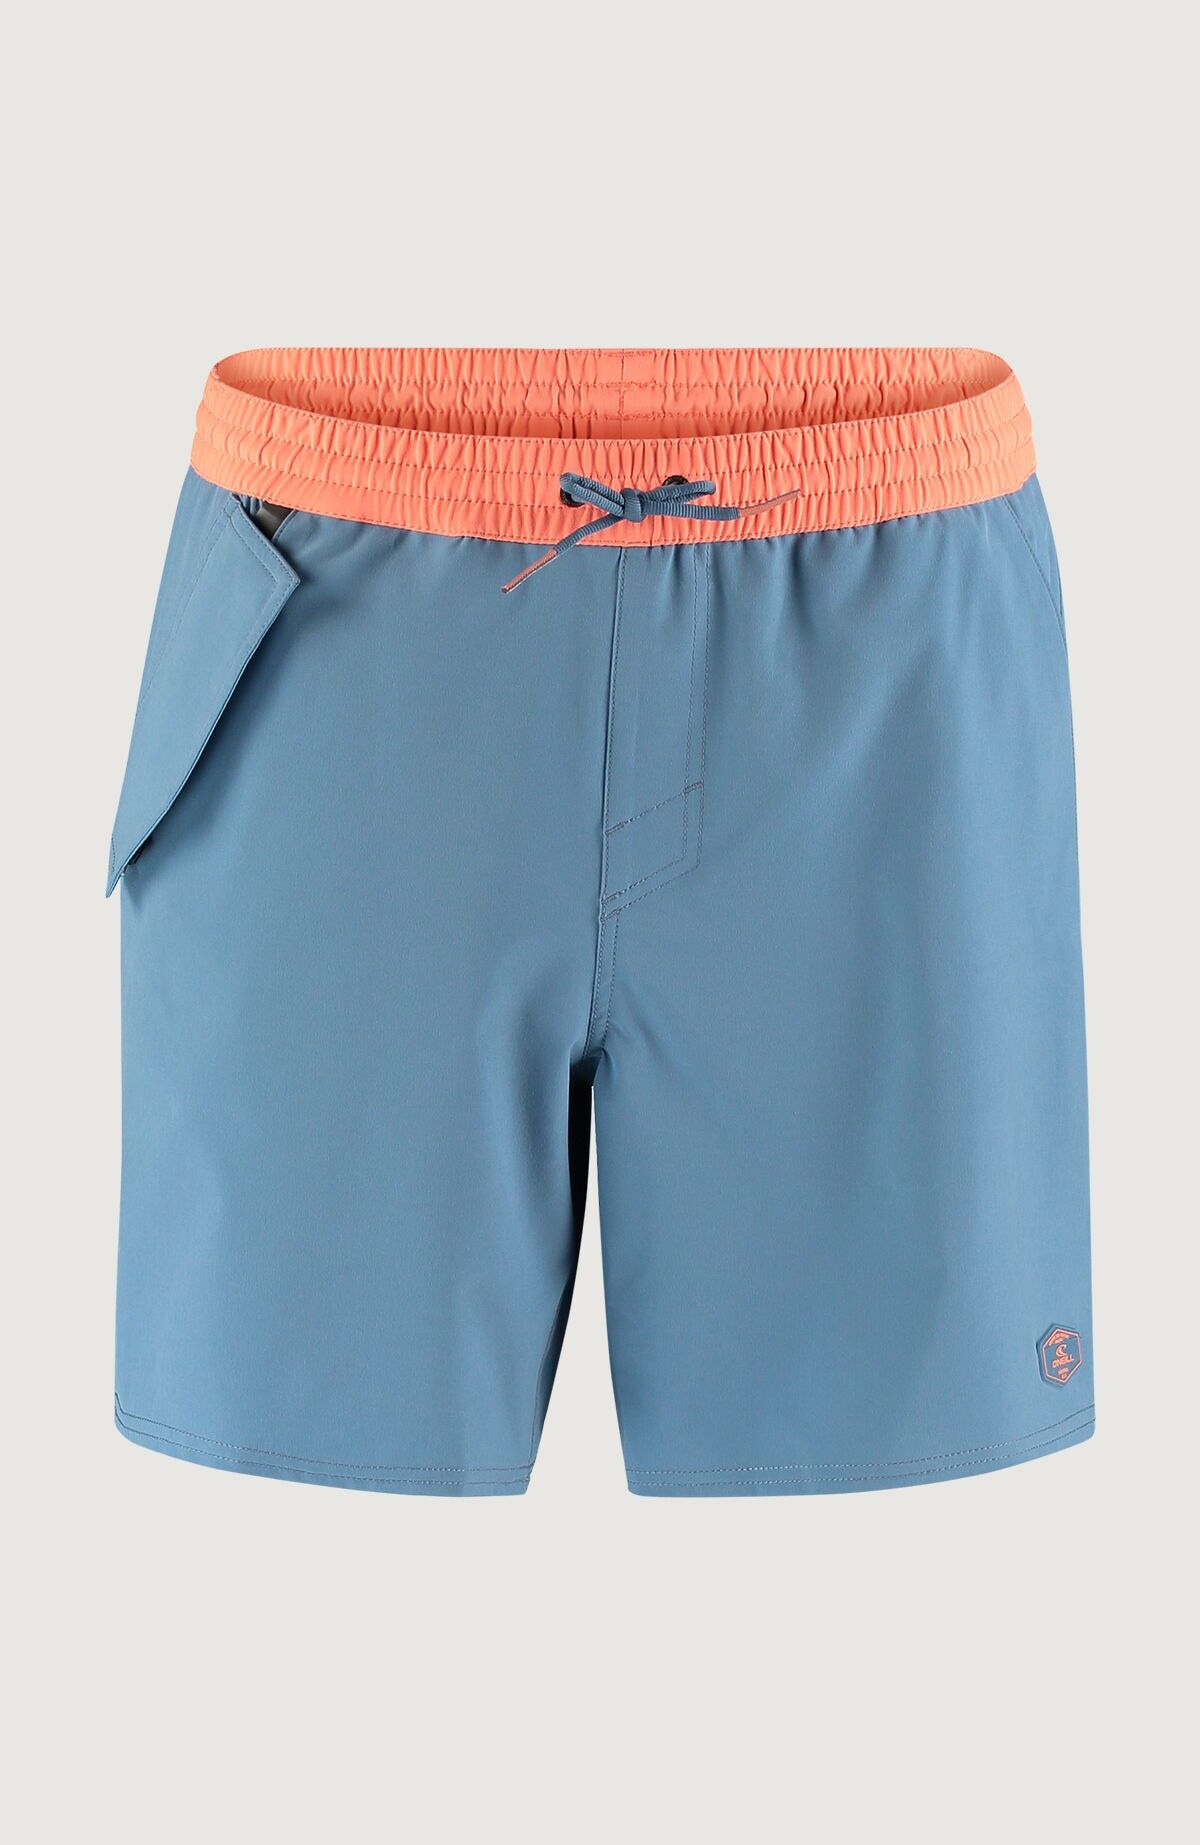 O'Neill Wp-Pocket Shorts - Badeshorts - Herren